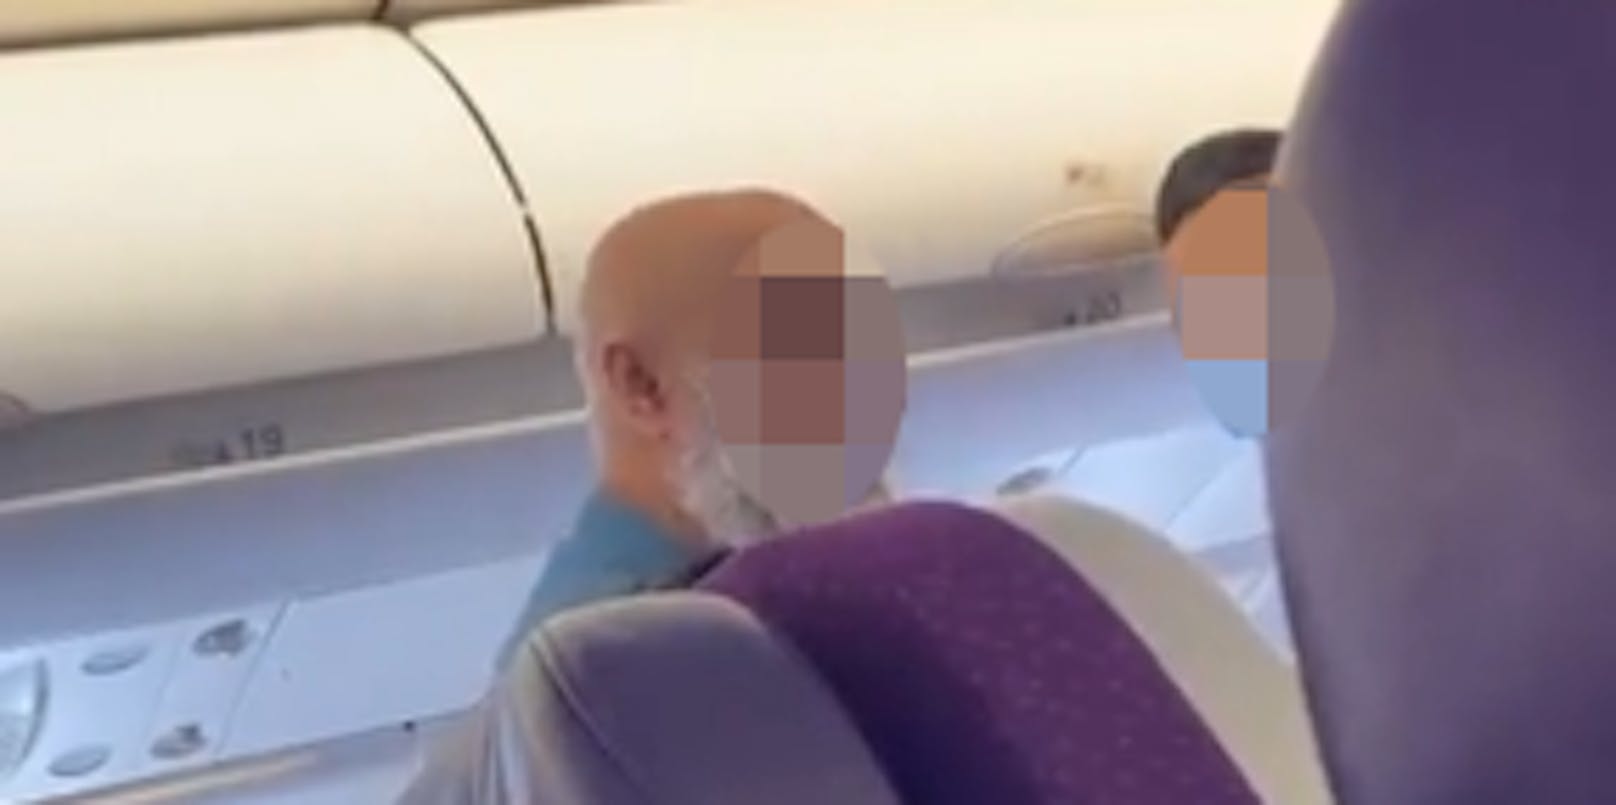 "Sklave von Allah" – nach Start Tumult in Flugzeug